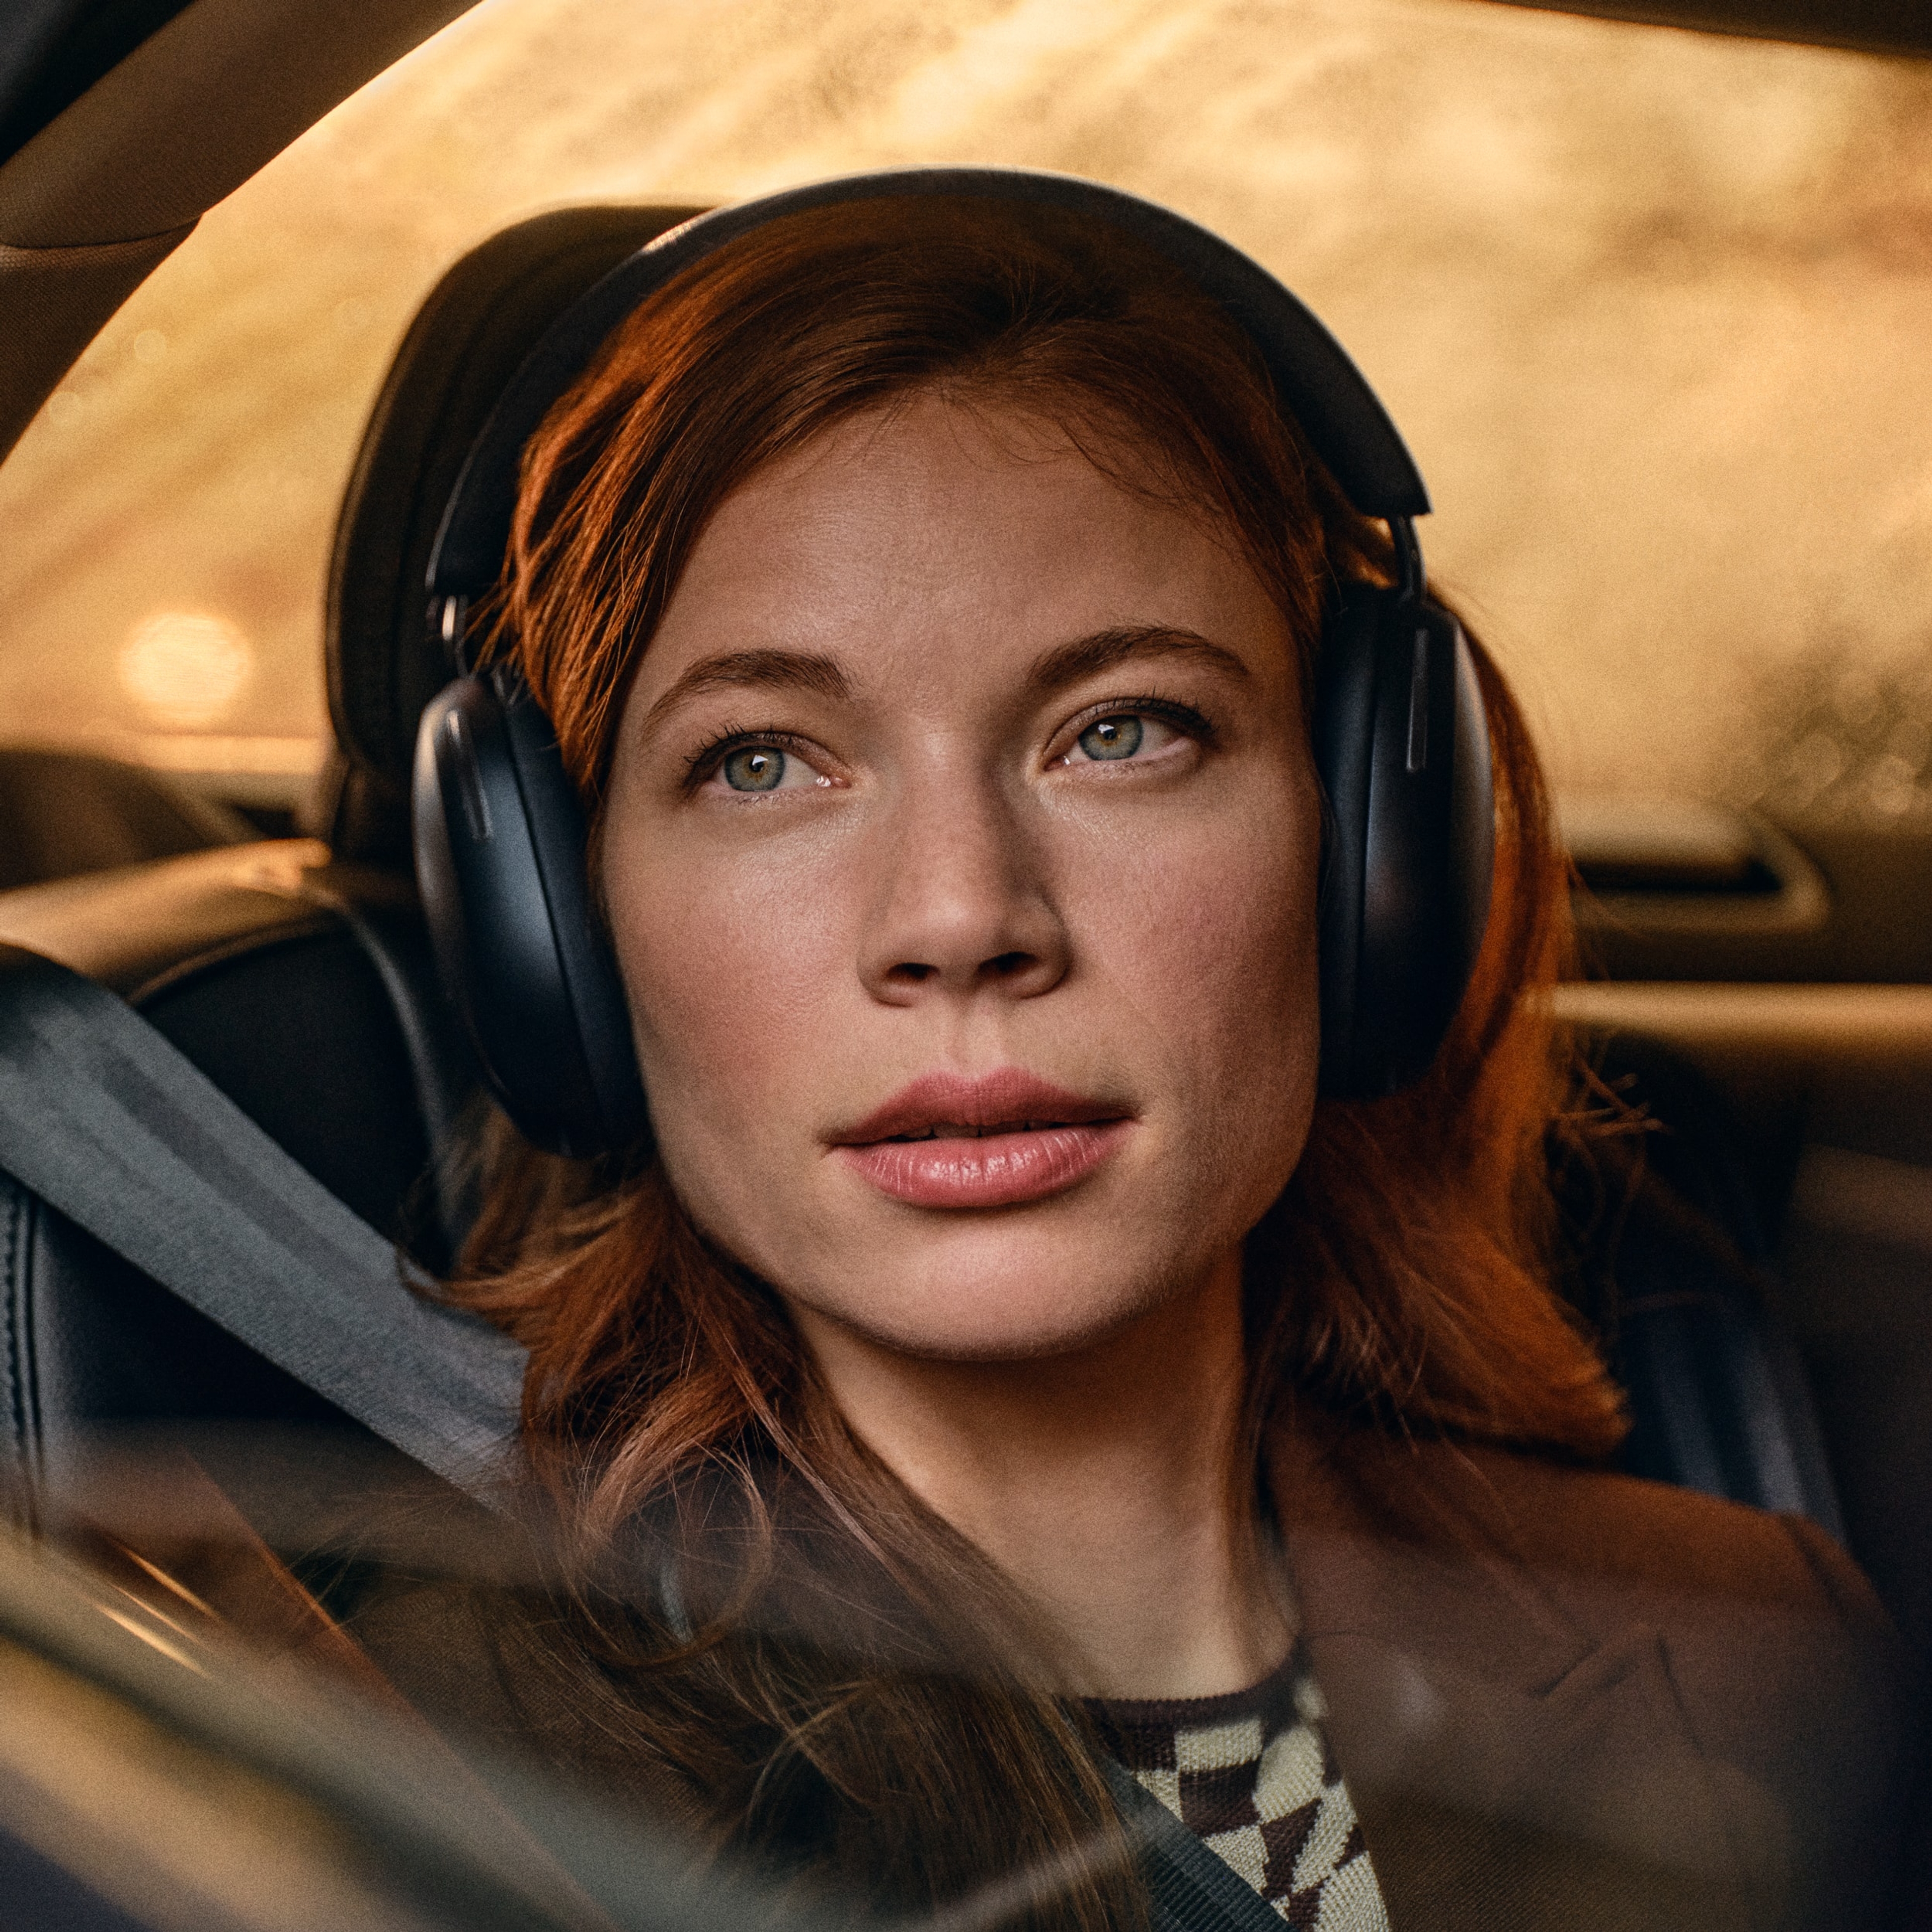 Vrouwelijke gebruiker in een auto met een zwarte Sonos Ace koptelefoon op